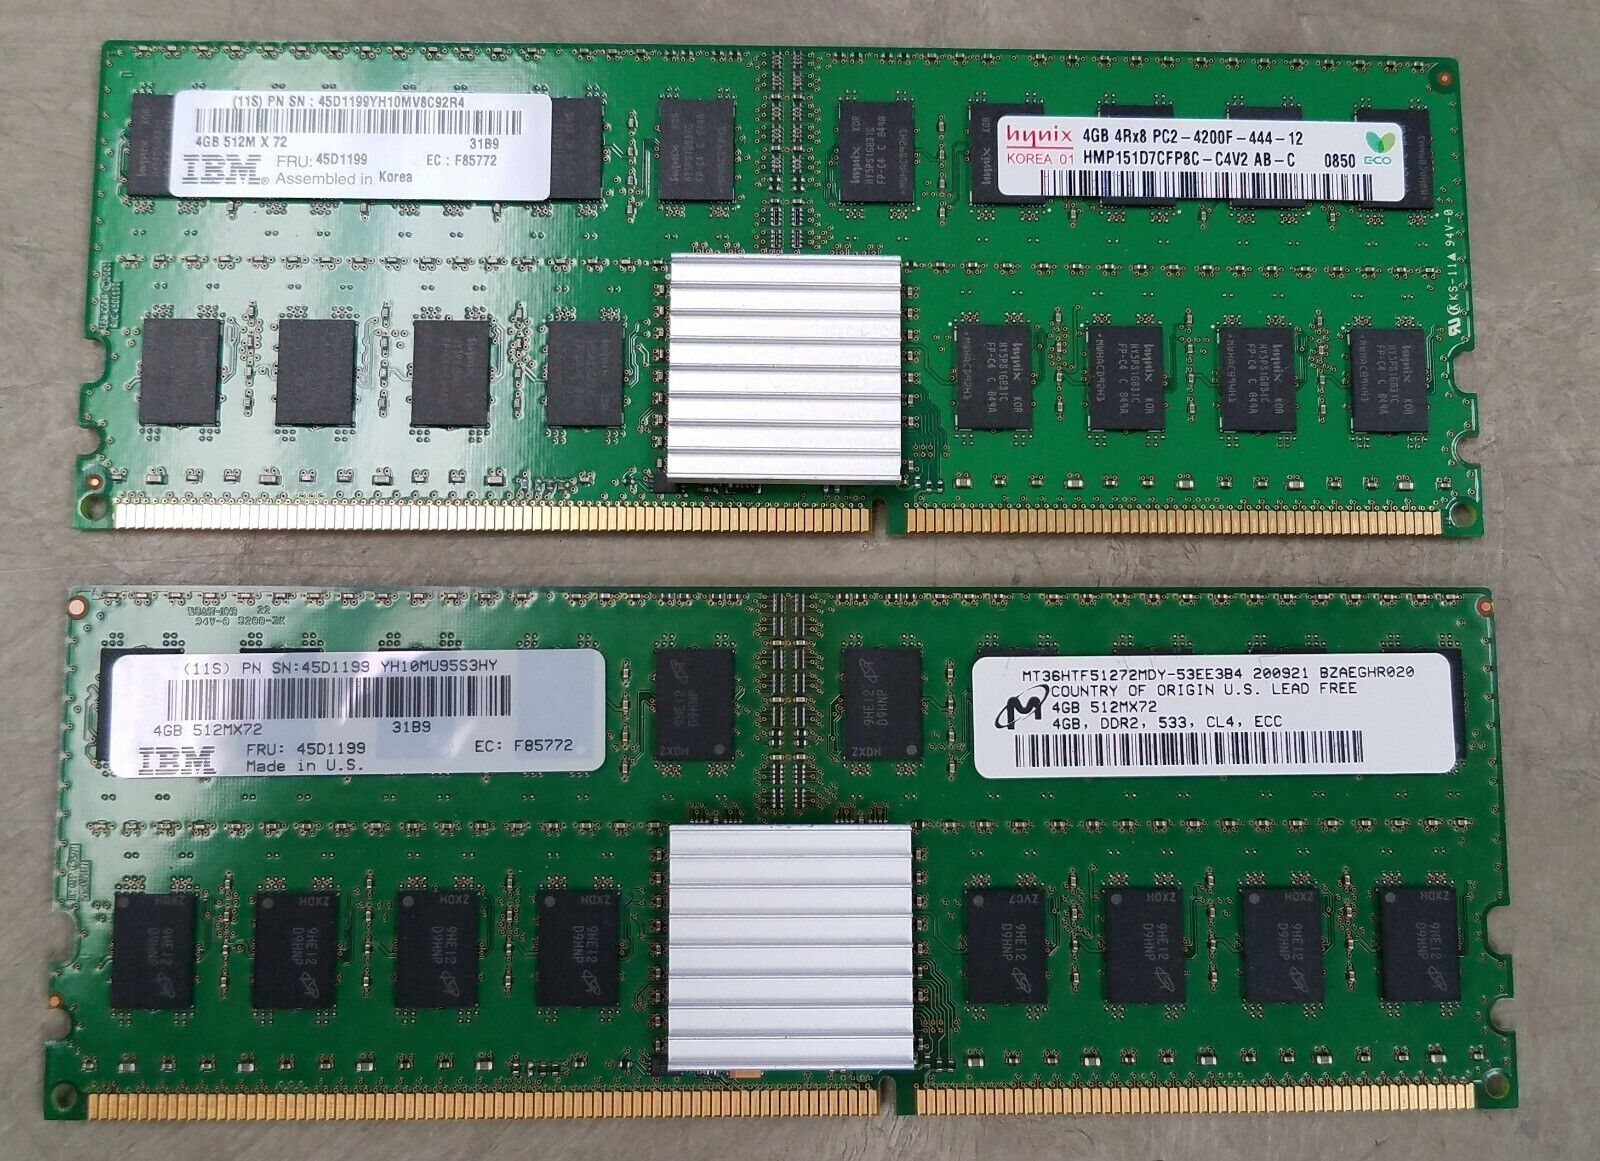 96GB (24x4GB) IBM Power Systems DDR2 RAM PC2-3200 Hynix/Micron 45D1199